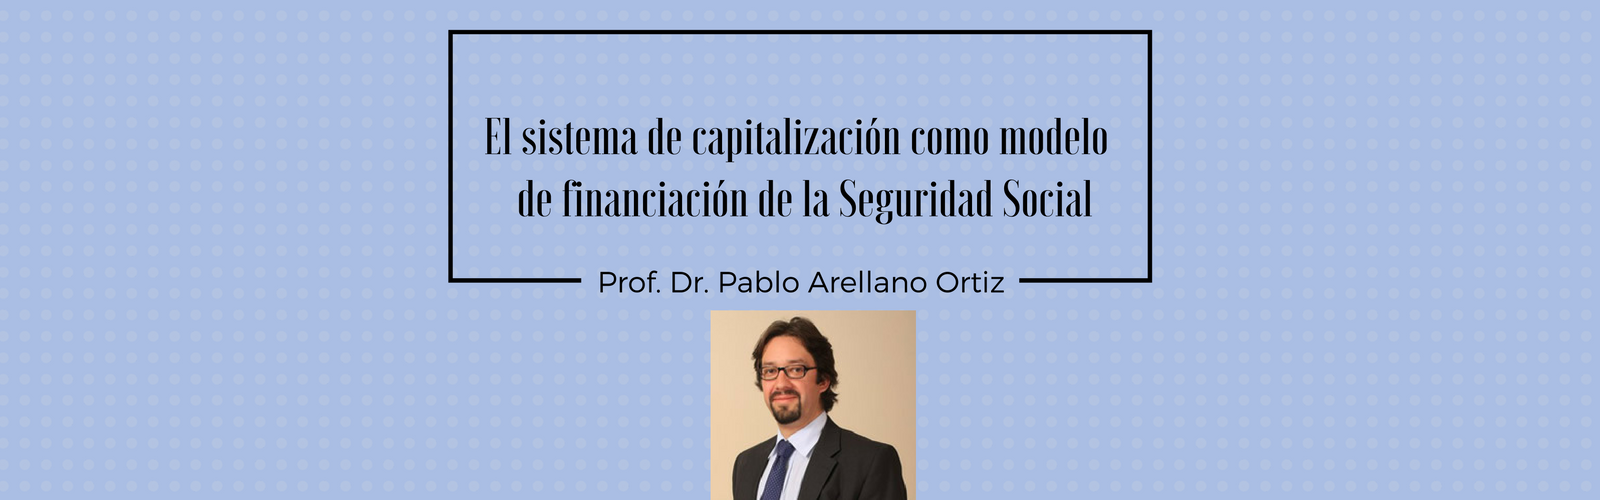 El sistema de capitalización como modelo de financiación de la Seguridad Social. Por Dr. Pablo Arellano